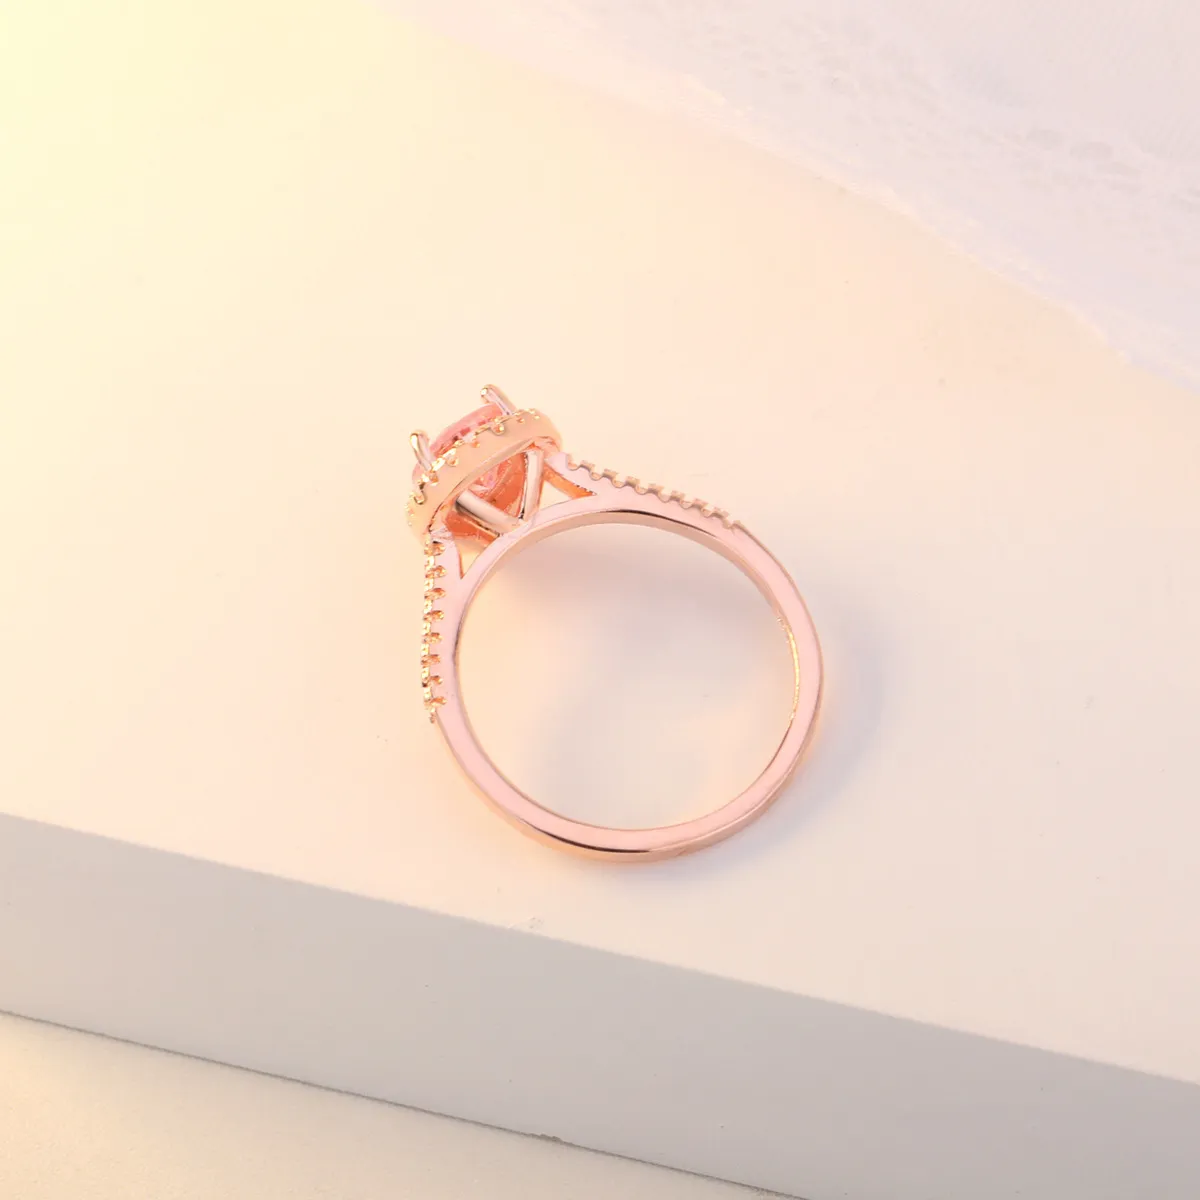 OMHXZJ Цельноевропейское модное кольцо для женщин и девочек, свадебный подарок, капля воды, розовый, белый циркон, кольцо из розового золота 18 карат, RR5981847484